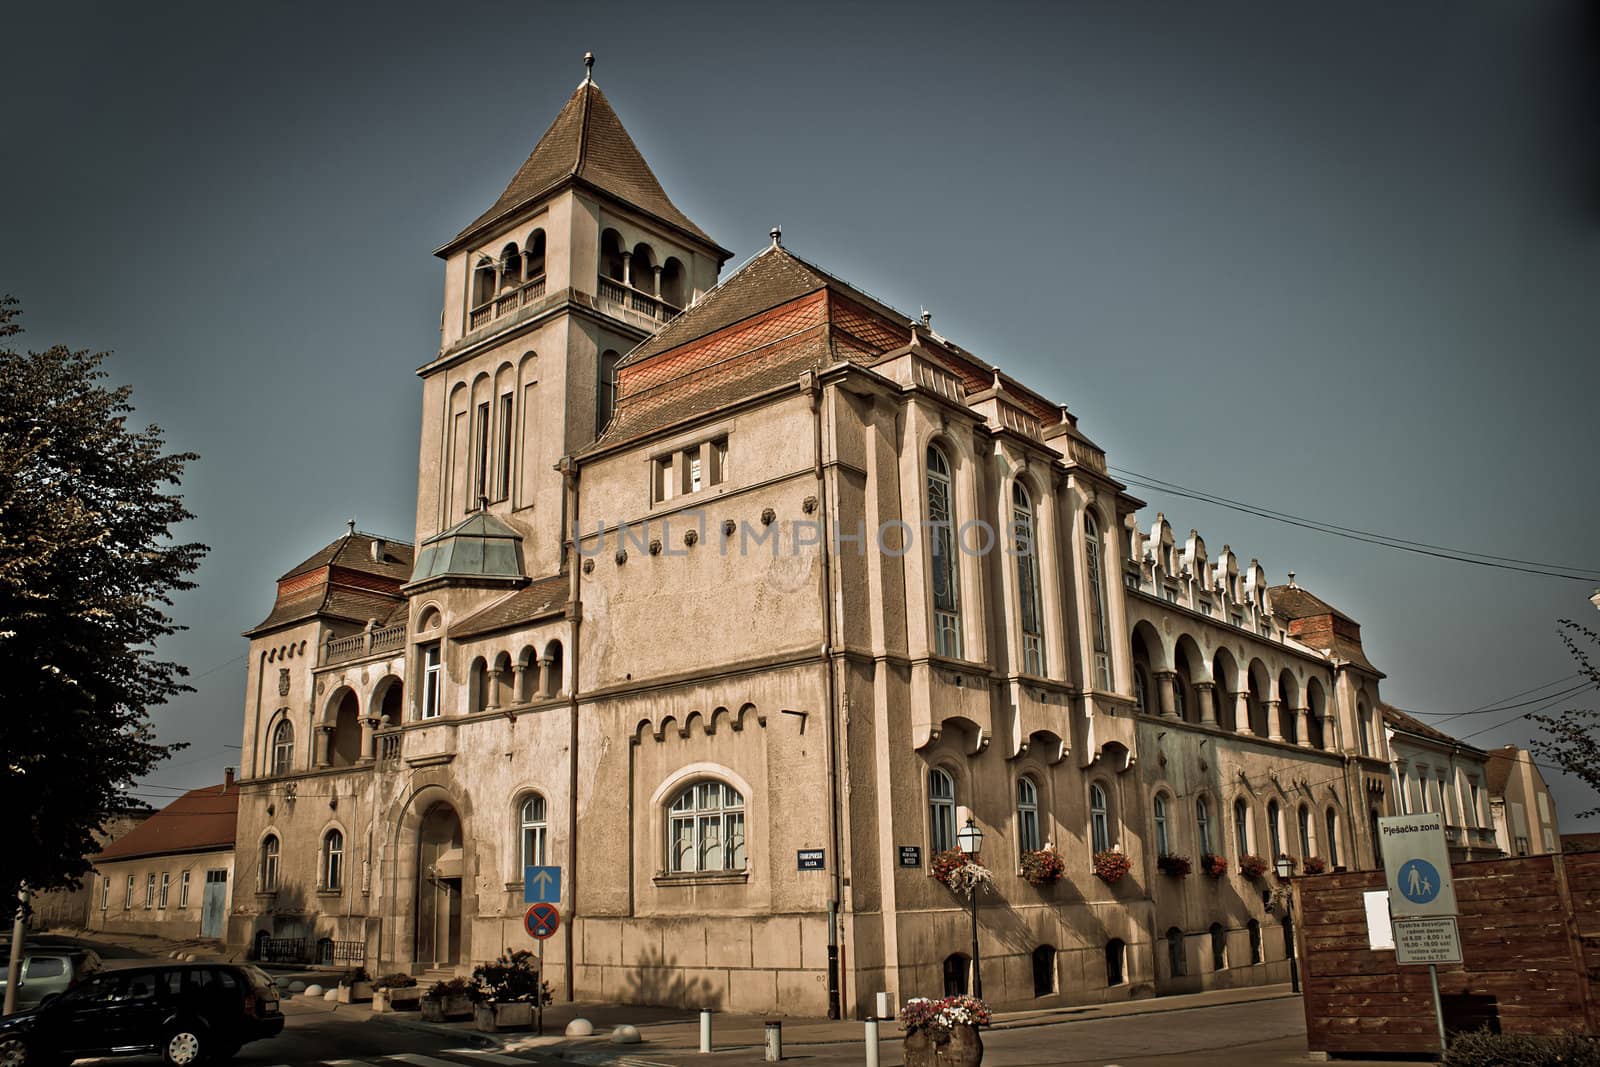 Croatian national hall building, Krizevci, Croatia by xbrchx